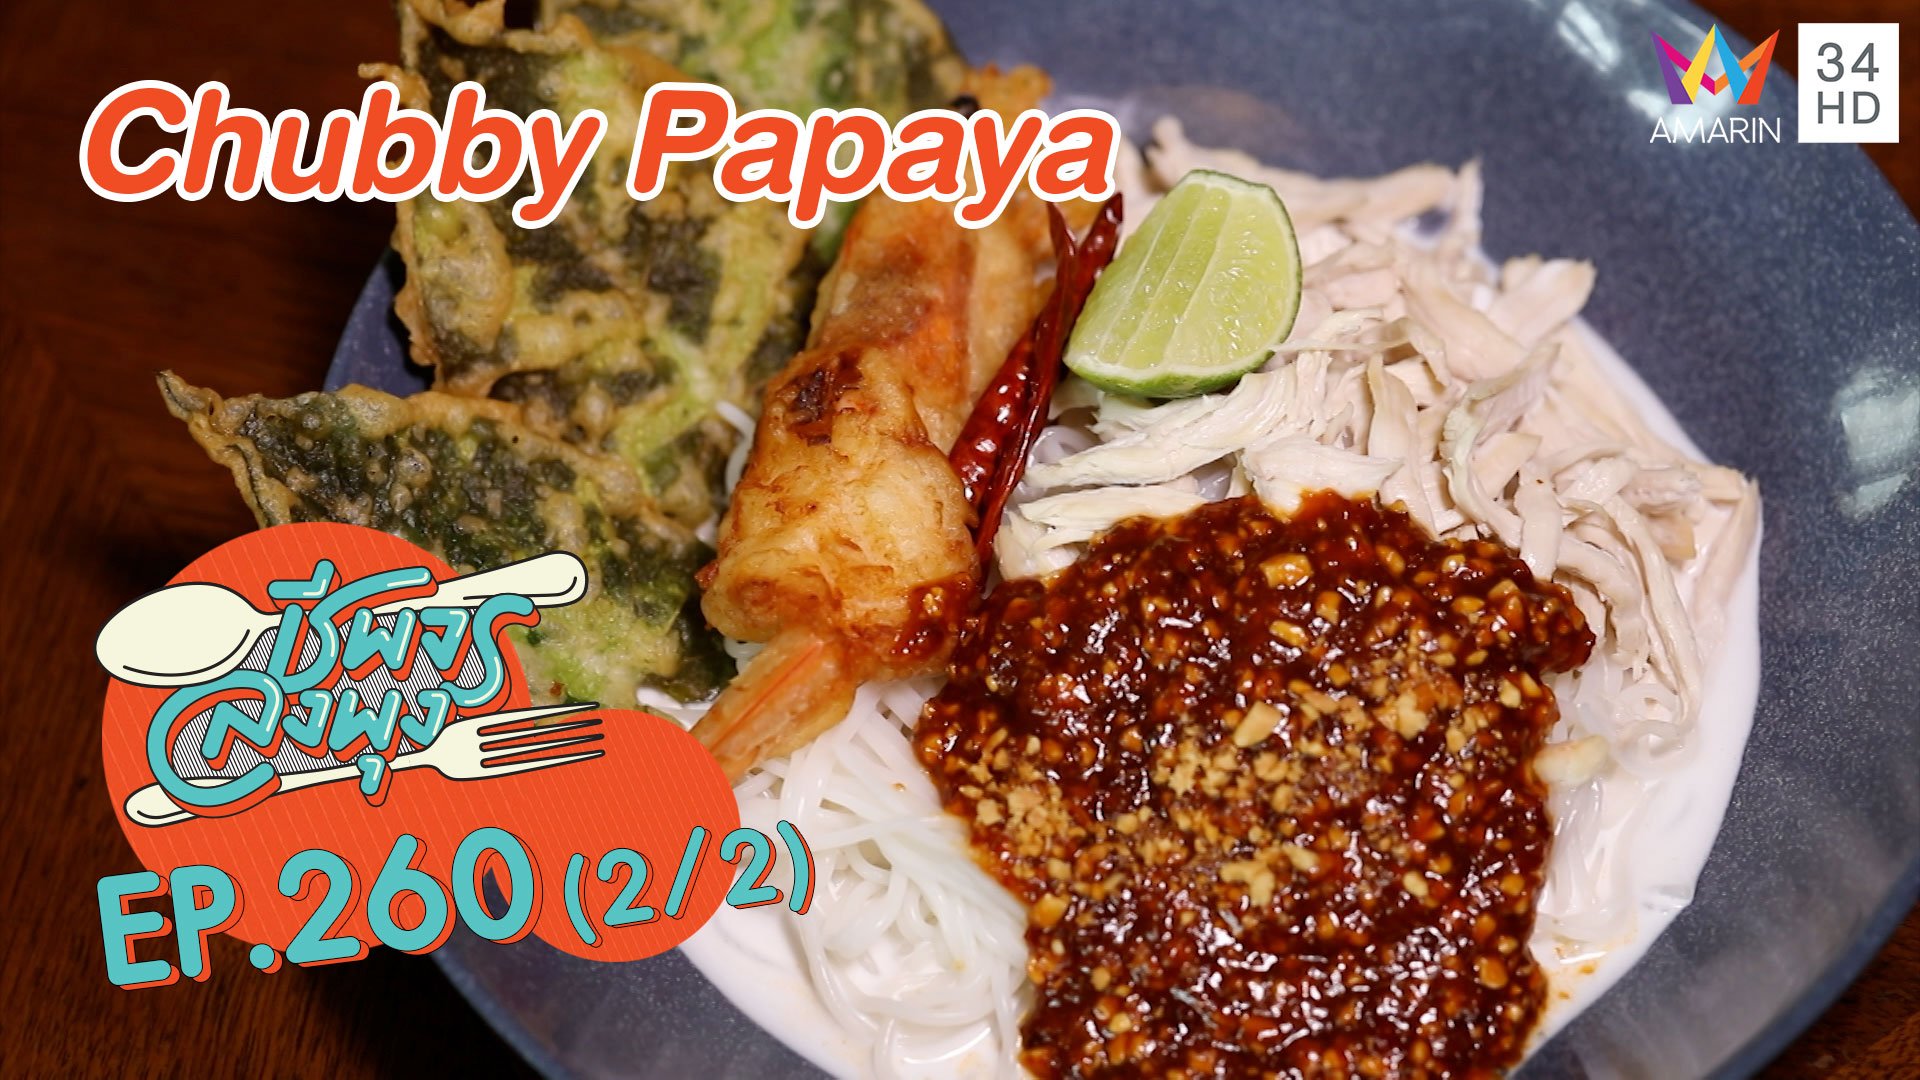 เด็ดทั้งคาวหวาน ร้านChubby Papaya | ชีพจรลงพุง | 5 ธ.ค. 63 (2/2) | AMARIN TVHD34